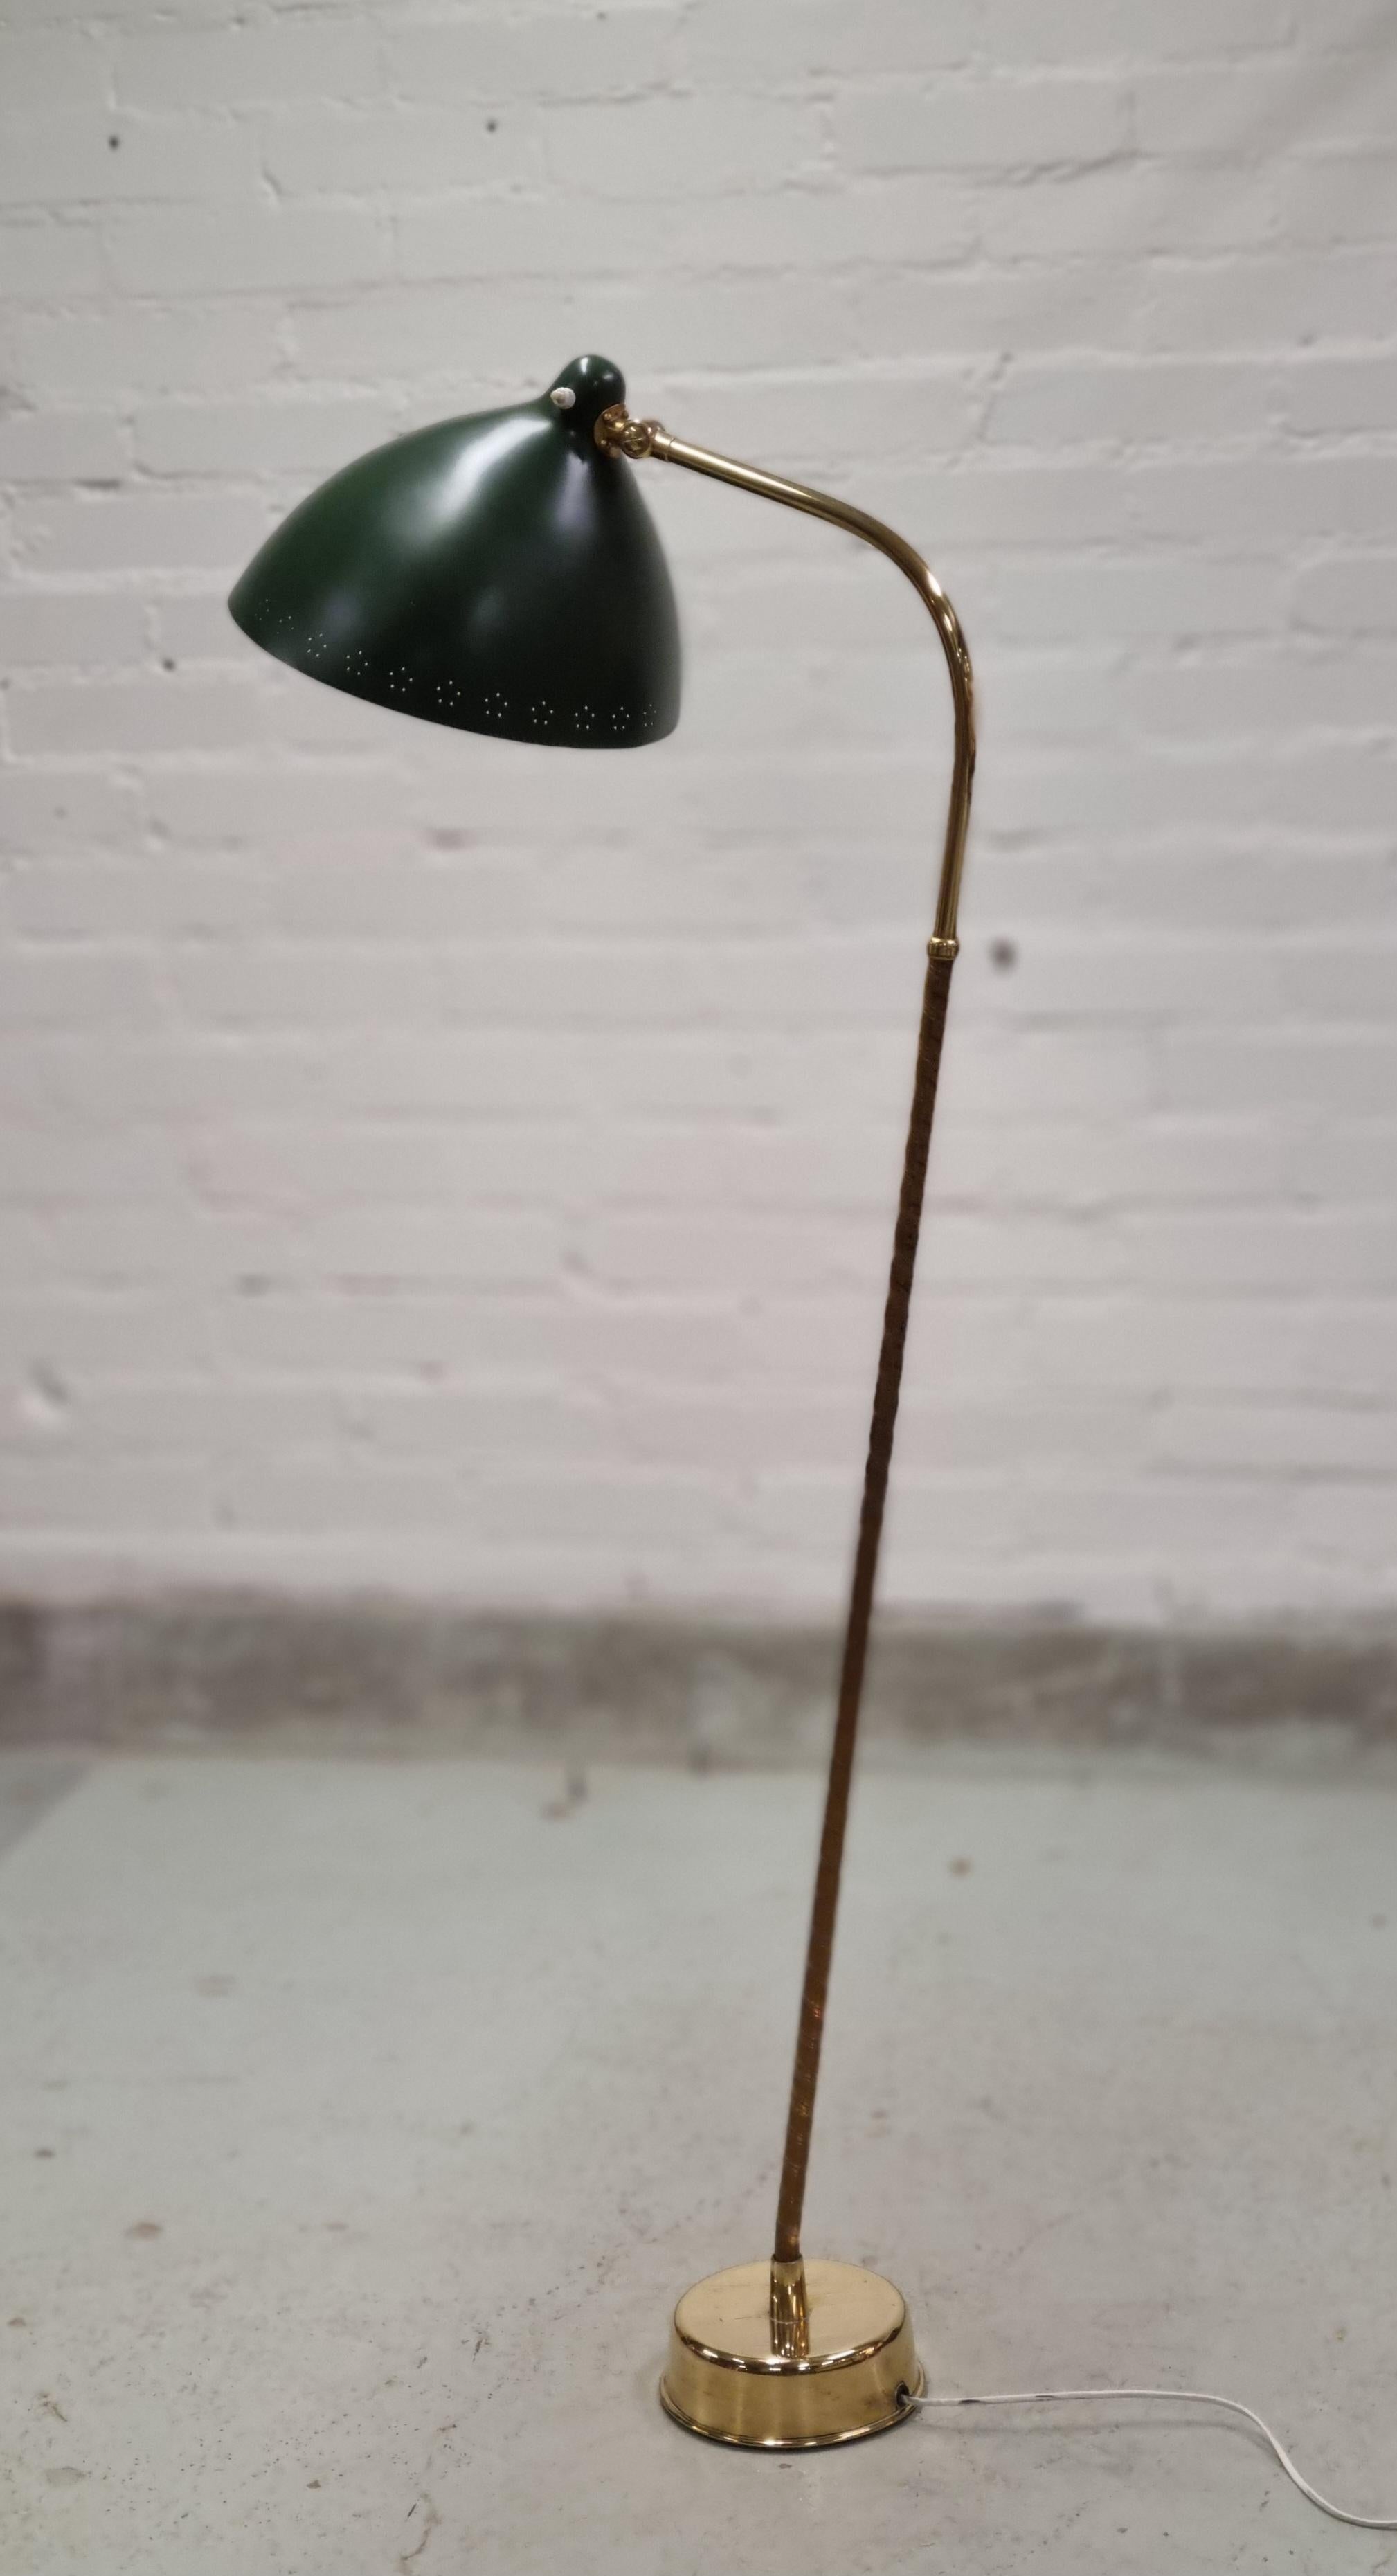 Un magnifique et original lampadaire des années 1950, avec un nouveau look vert forêt. Conçu par Lisa-Johansson pape et fabriqué par Orno. En parfait état d'origine avec une belle patine sur la tige et les parties en laiton. La teinte a été repeinte